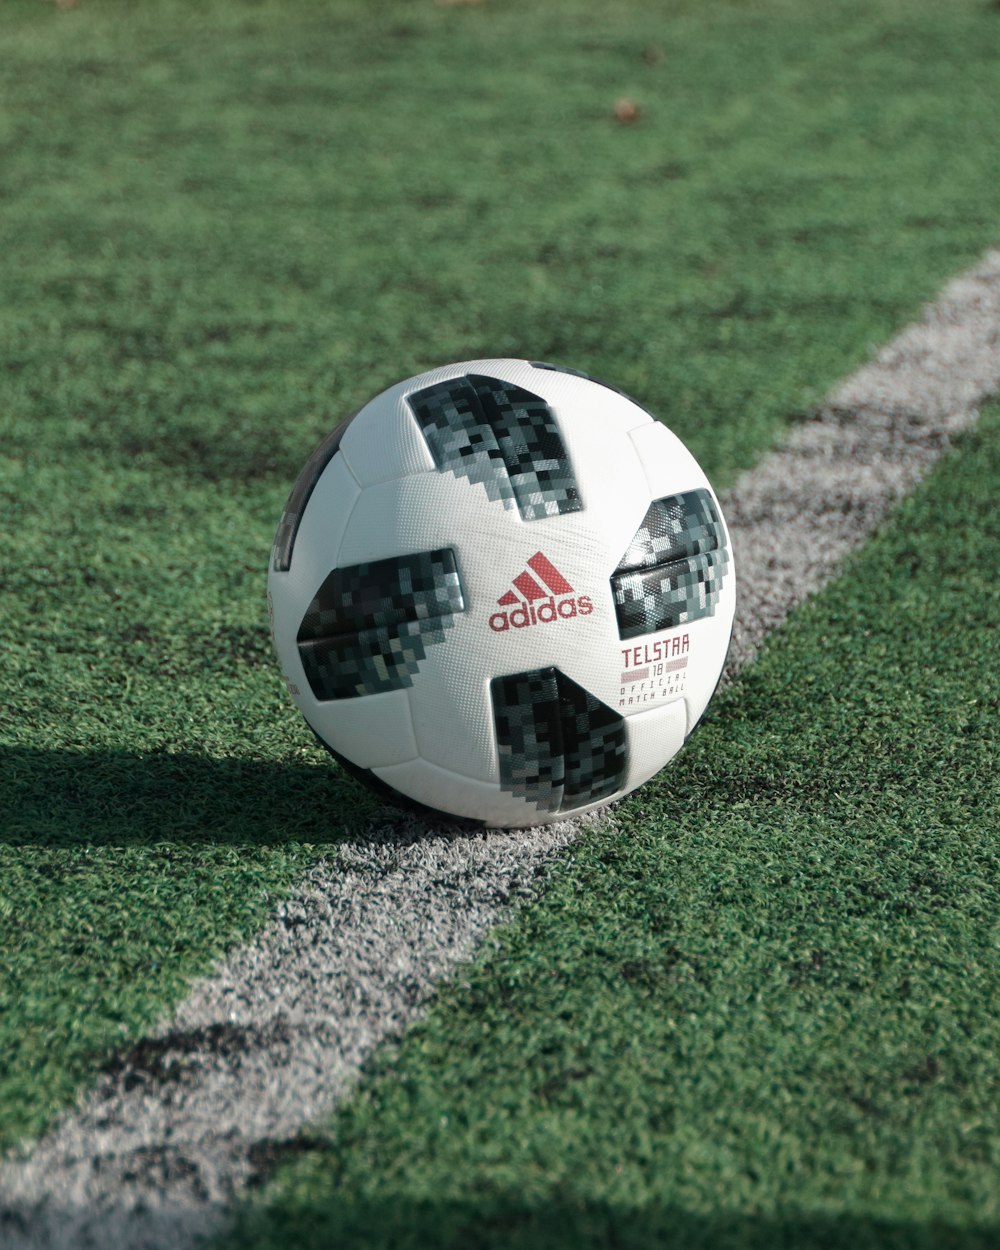 Fotografia ravvicinata del pallone da calcio adidas sul campo